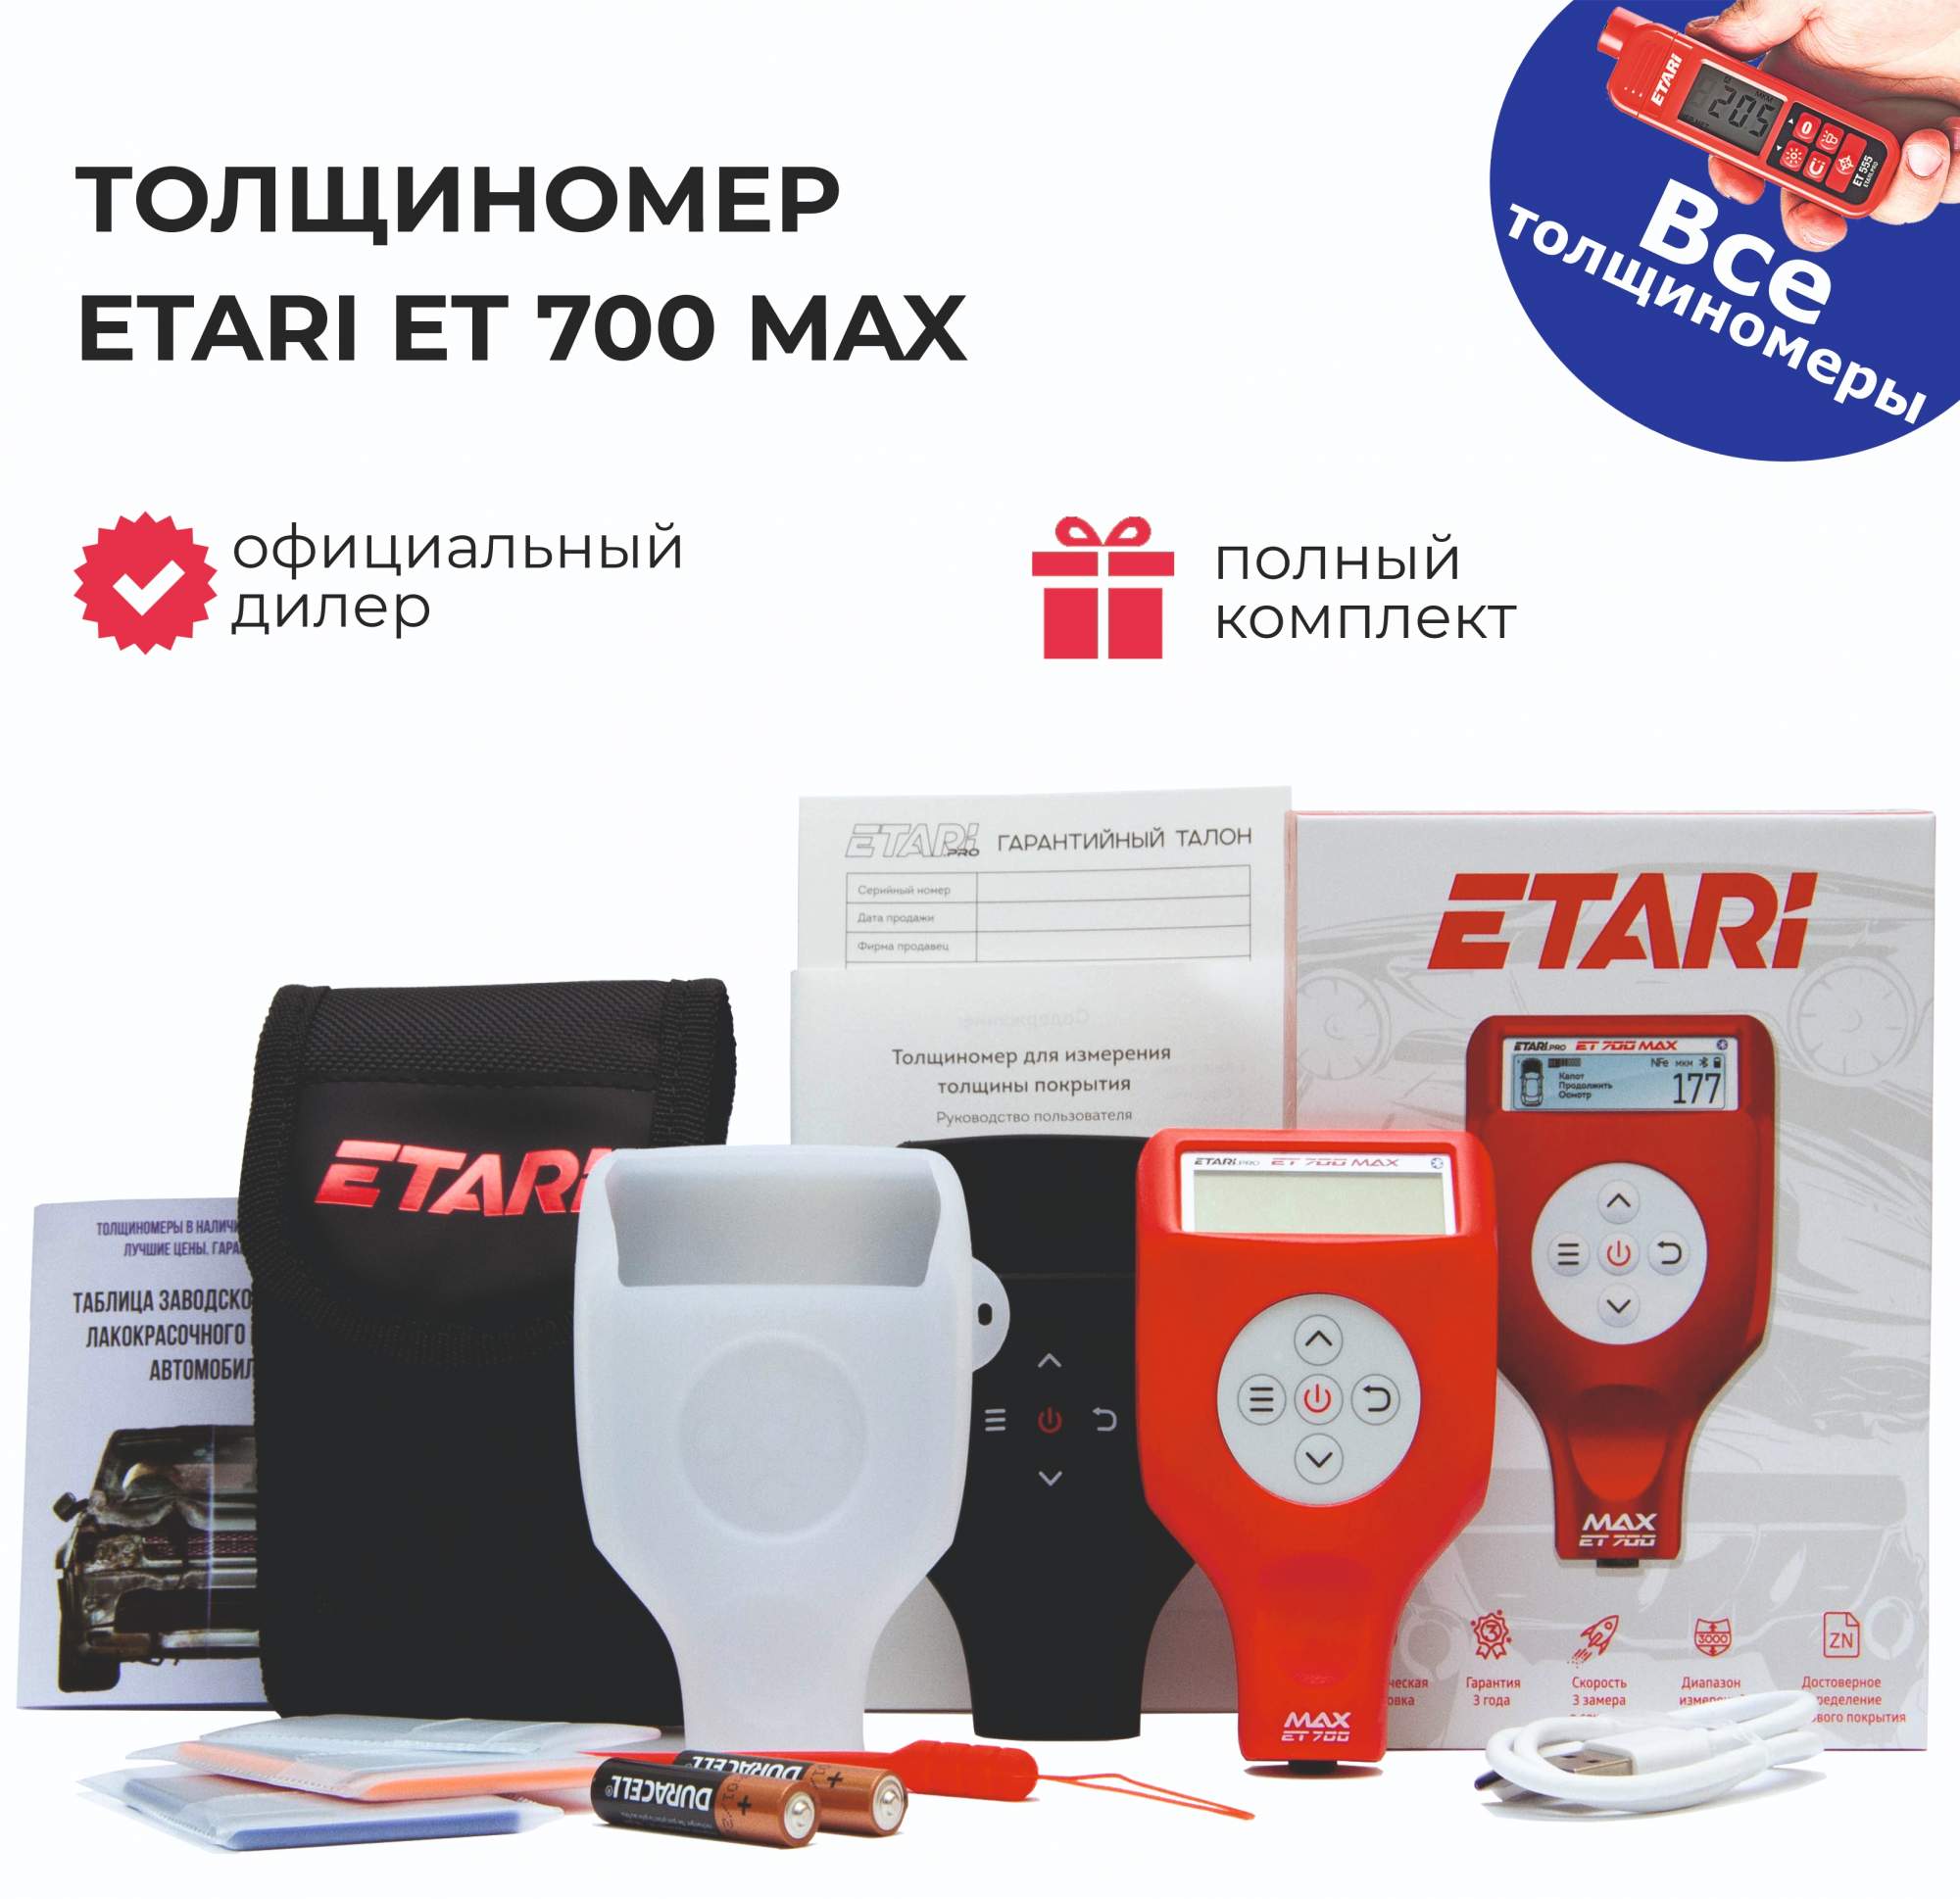 Толщиномер ETARI ET 700 MAX (максимальная комплектация)